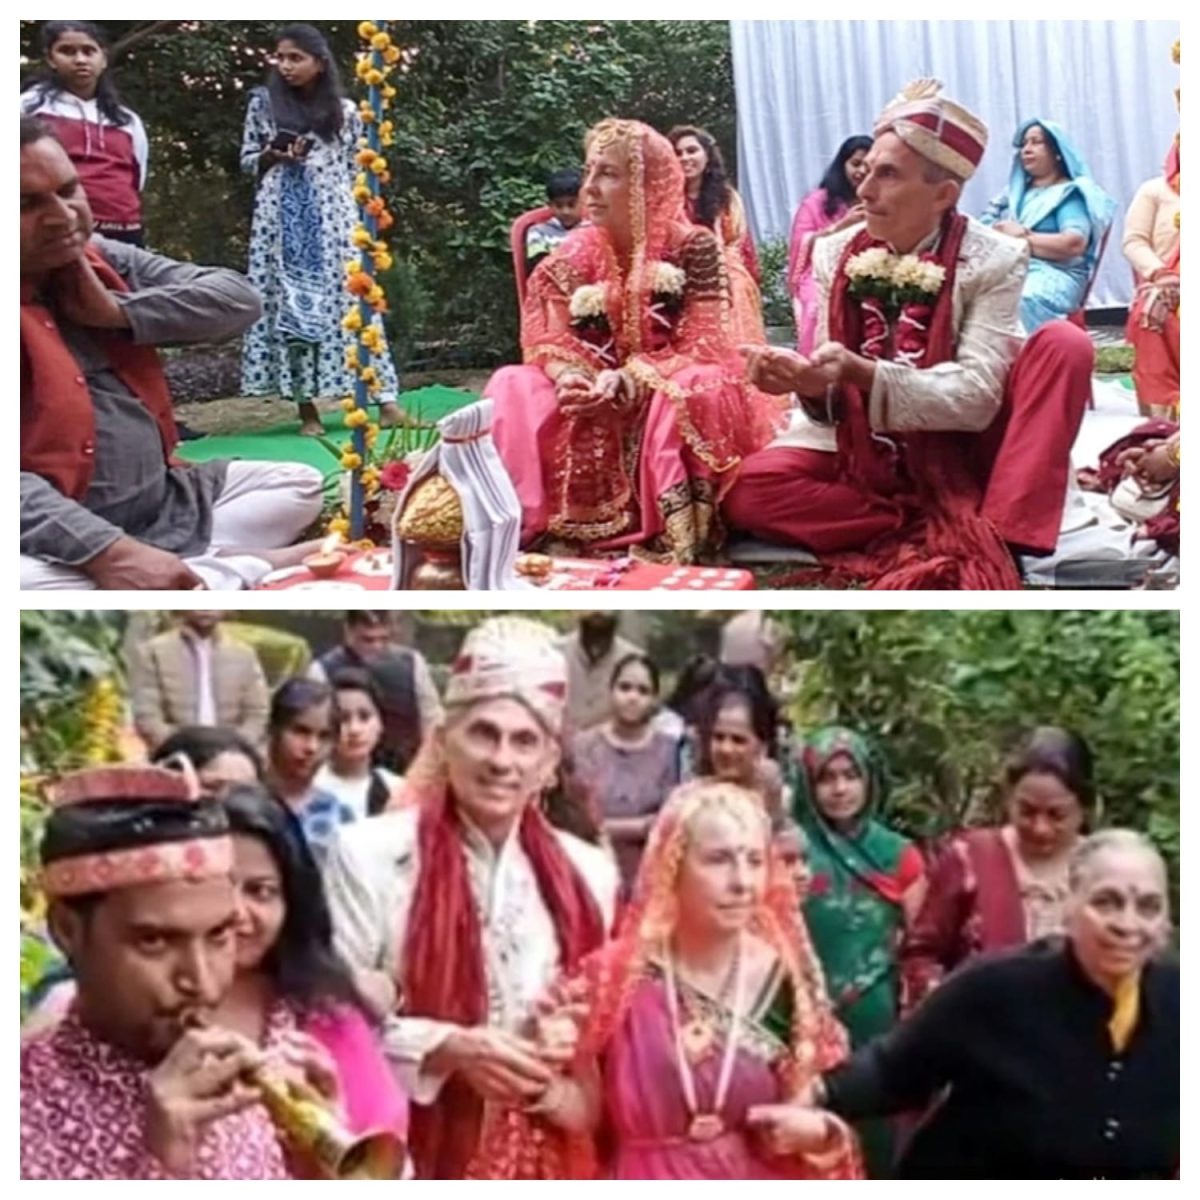 Wedding in Tajmahal : विदेशी दंपत्ति ने ताजमहल में लिए 7 फेरे, 7 जन्मों का साथ मांगा